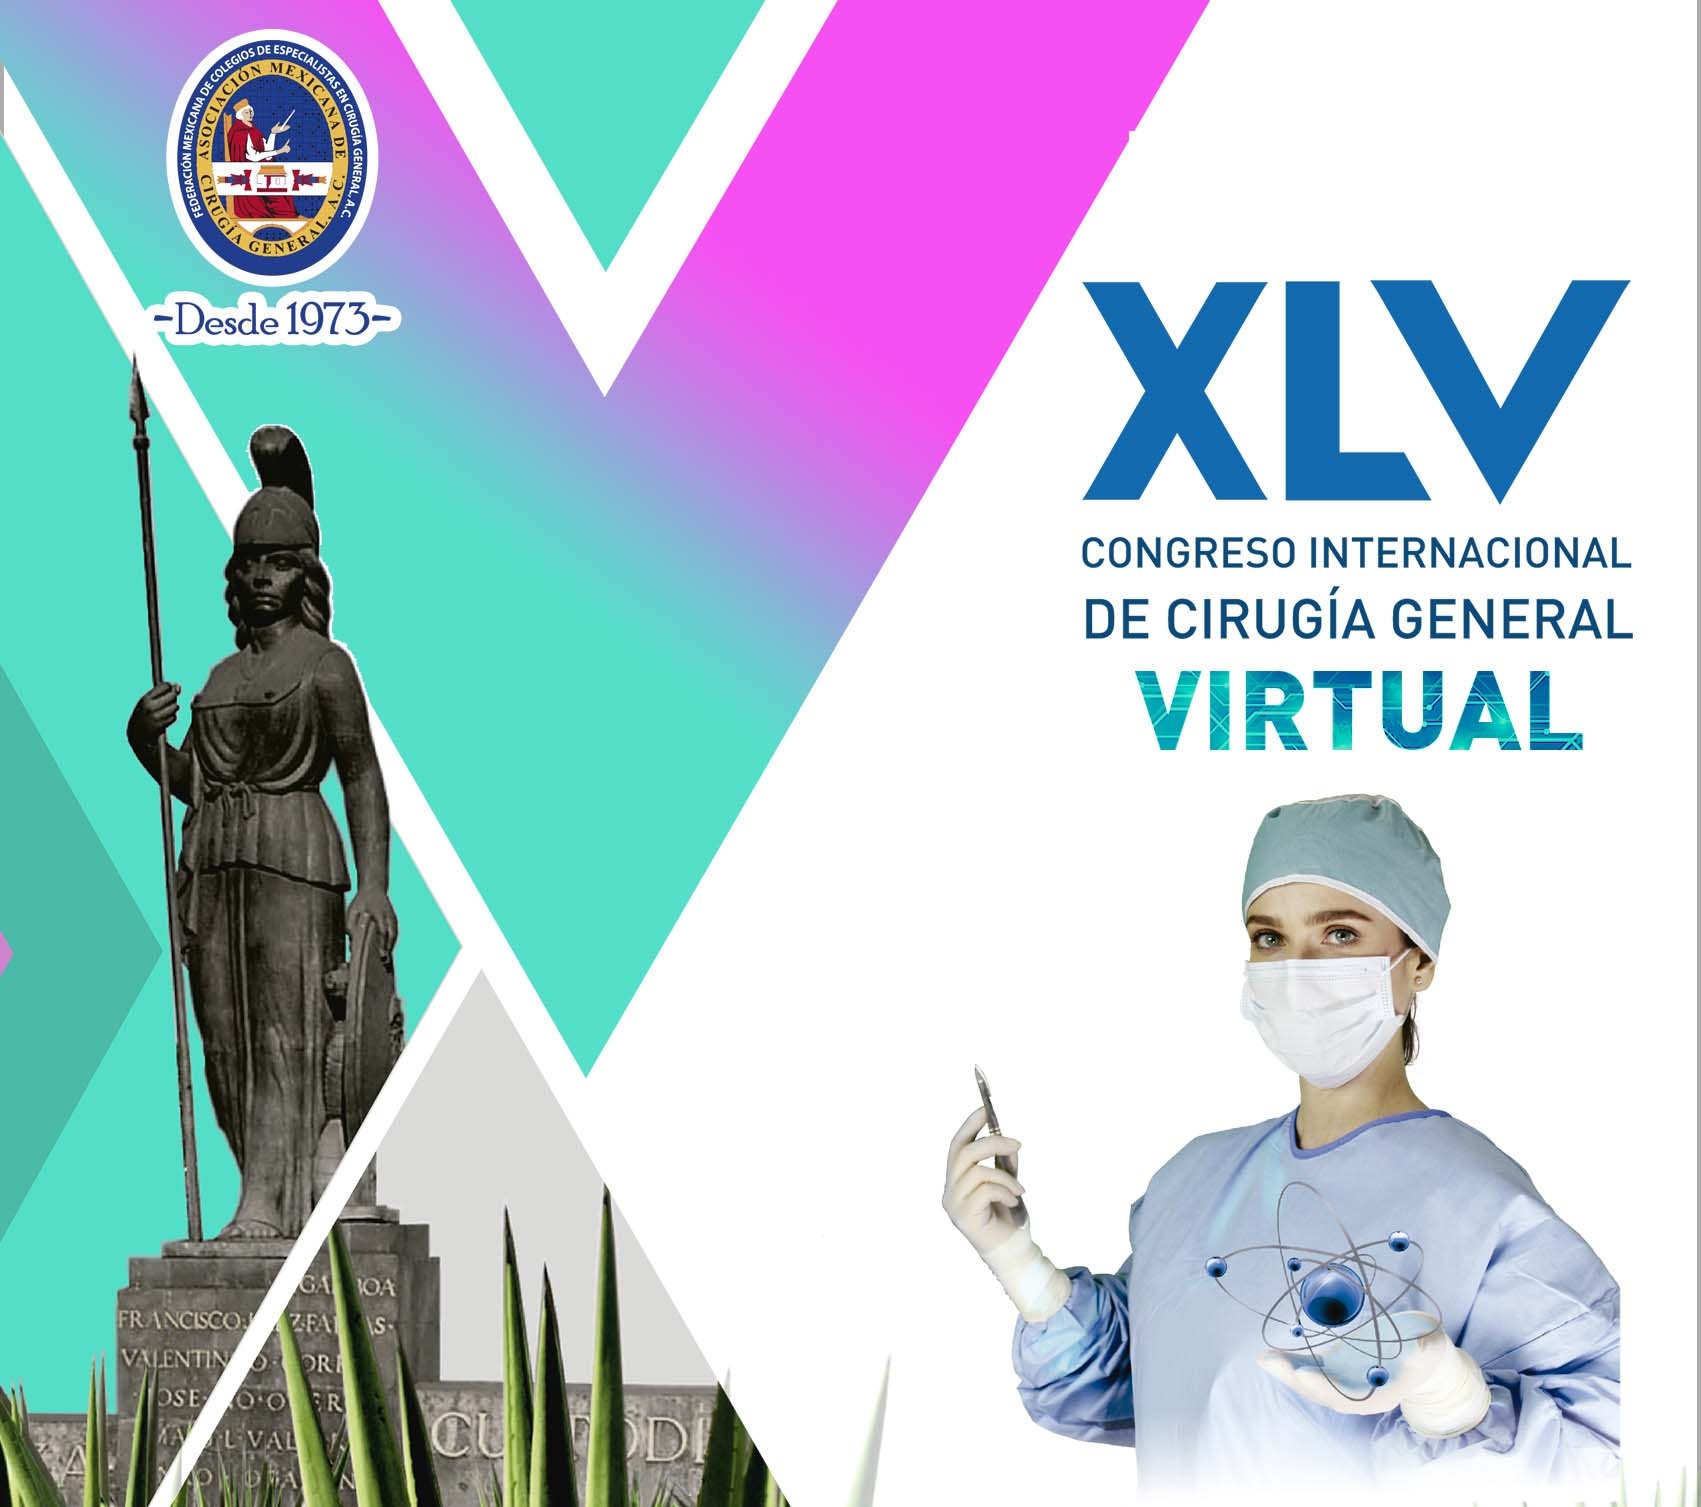 XLV Congreso Internacional de Cirugía General Virtual